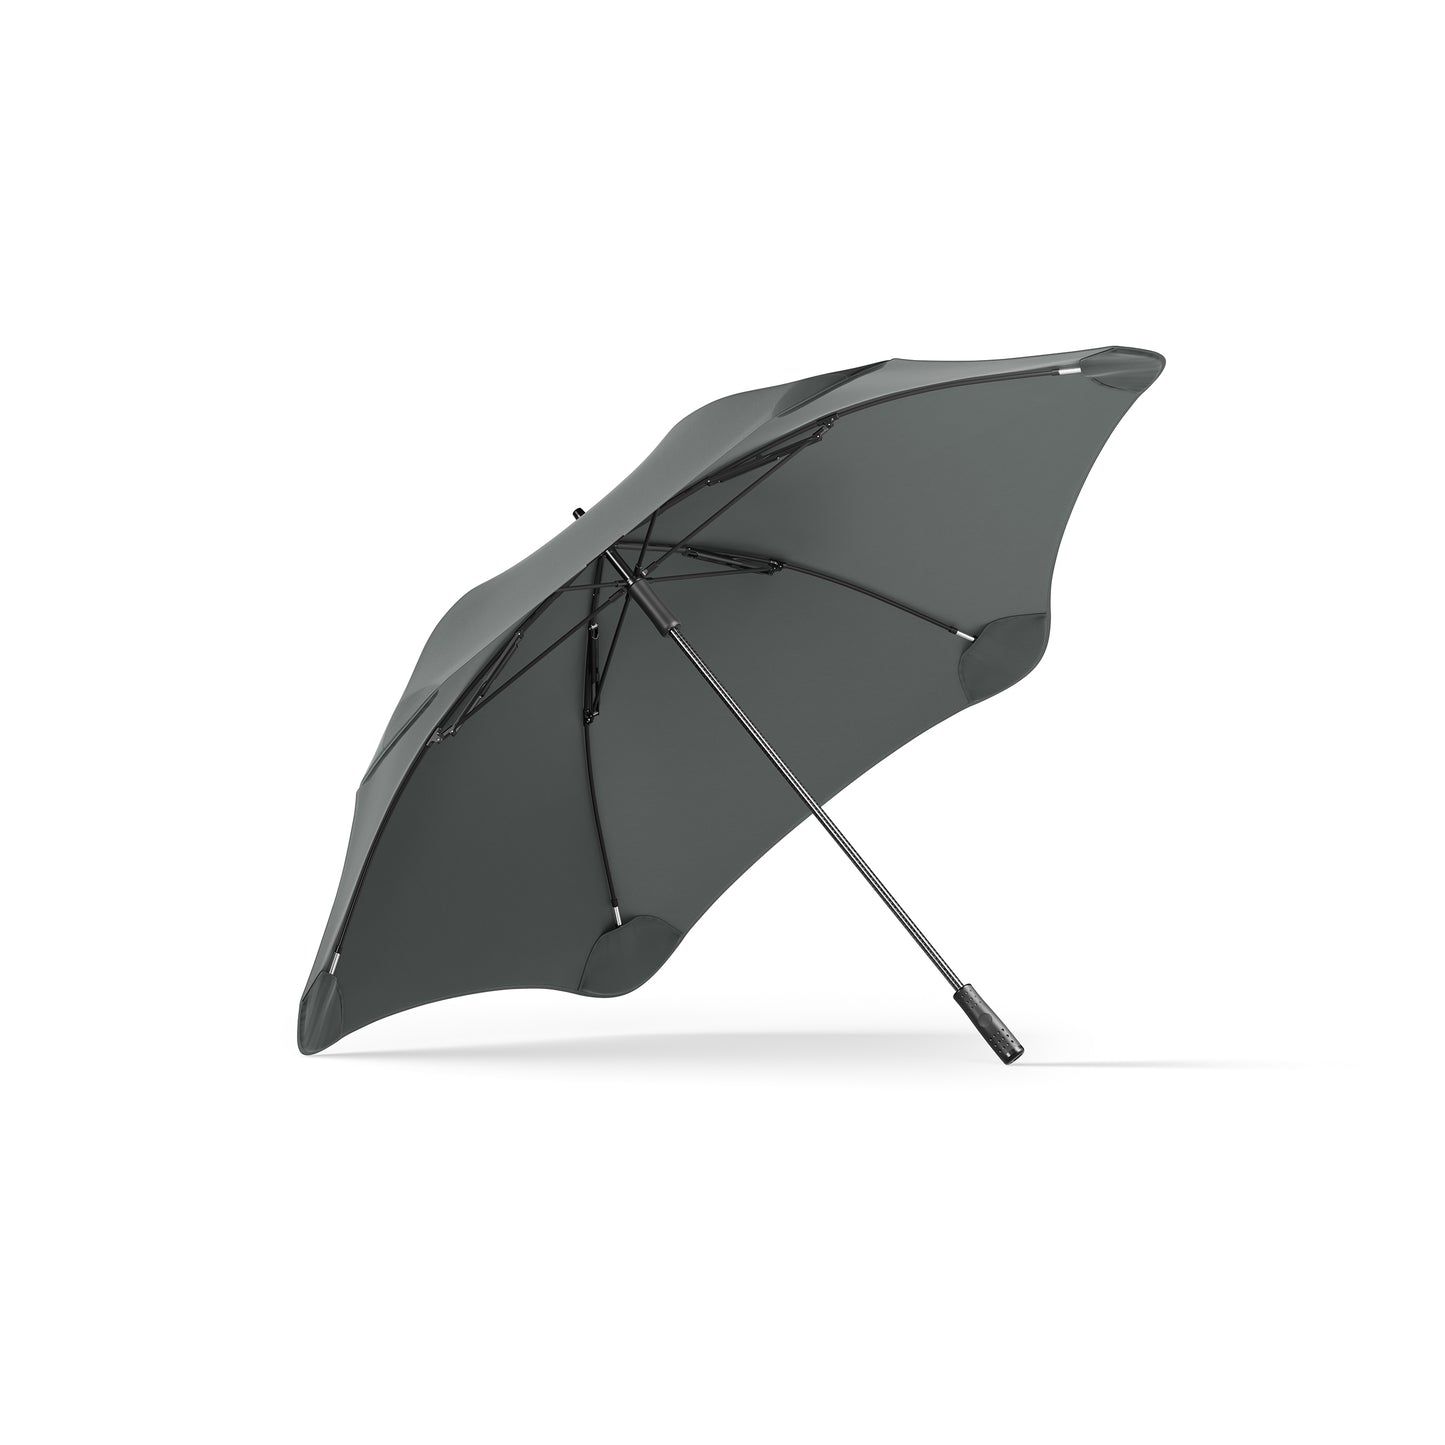 Blunt Sport Umbrella - Charcoal/Black